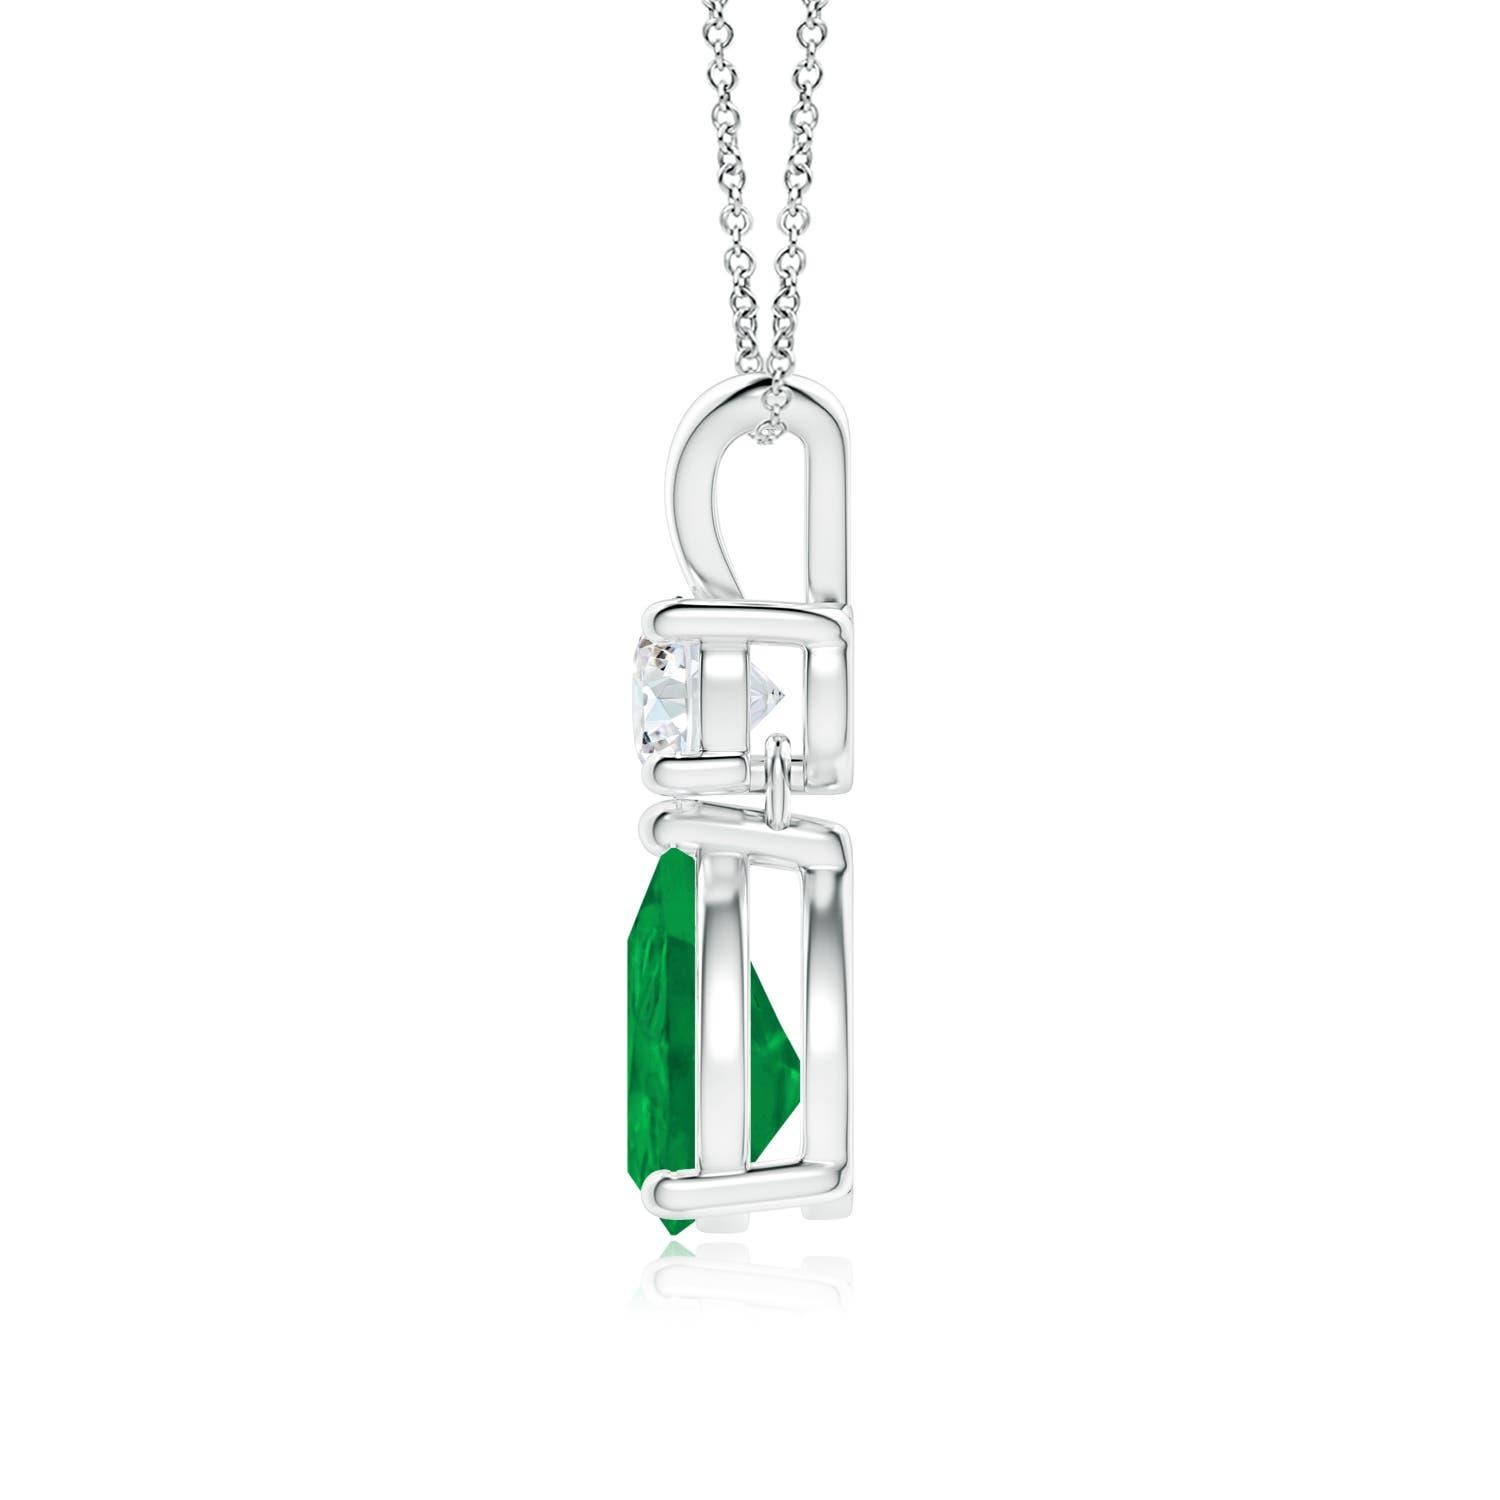 Une émeraude vert vif taillée en poire est suspendue à un diamant blanc étincelant sur cet élégant pendentif en forme de goutte. La balle en V lustrée ajoute de la beauté à ce pendentif en platine orné d'émeraudes et de diamants. Il dégage un charme